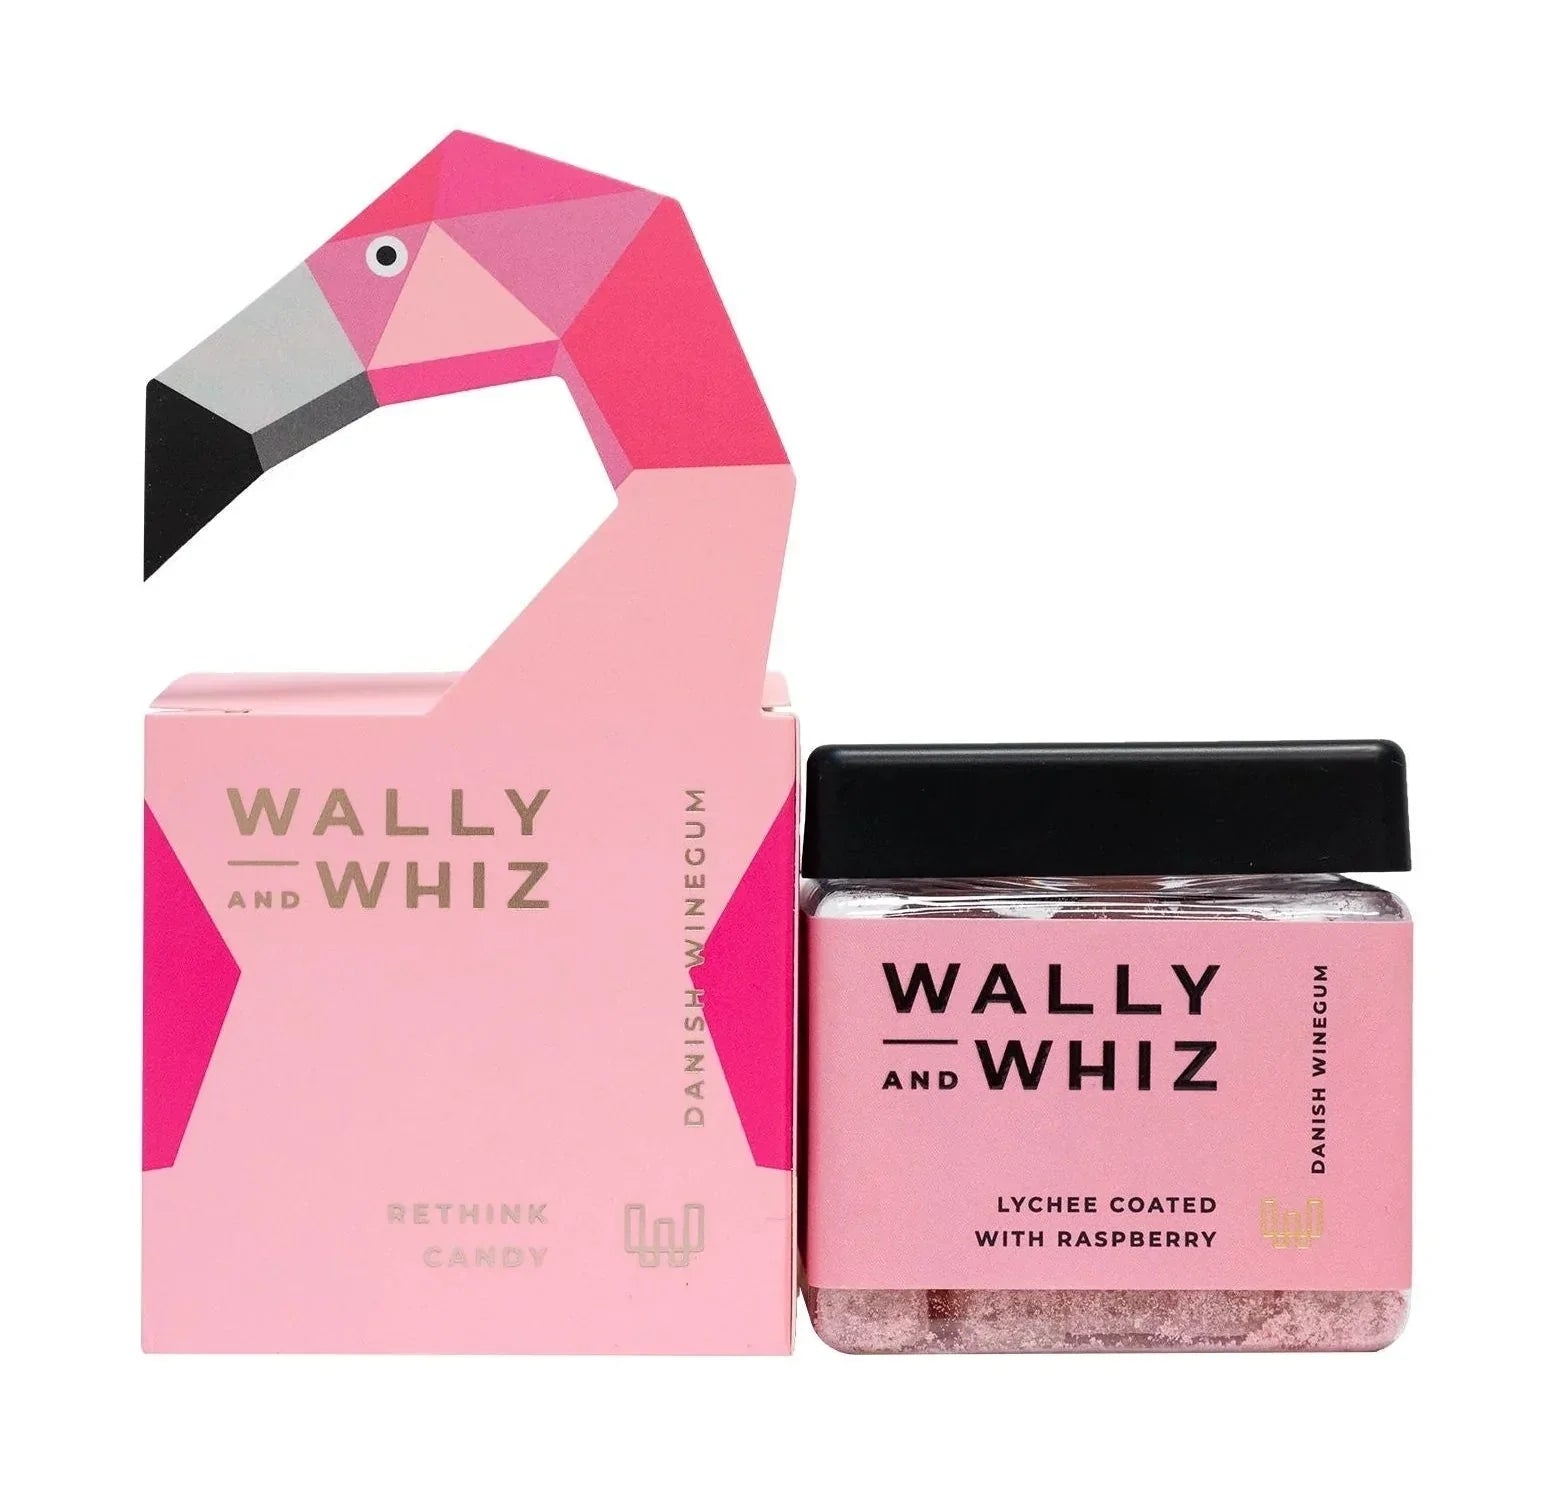 Cube de gomme de vin Wally et Whiz, lychoute rose flamanto avec framboise, 140g